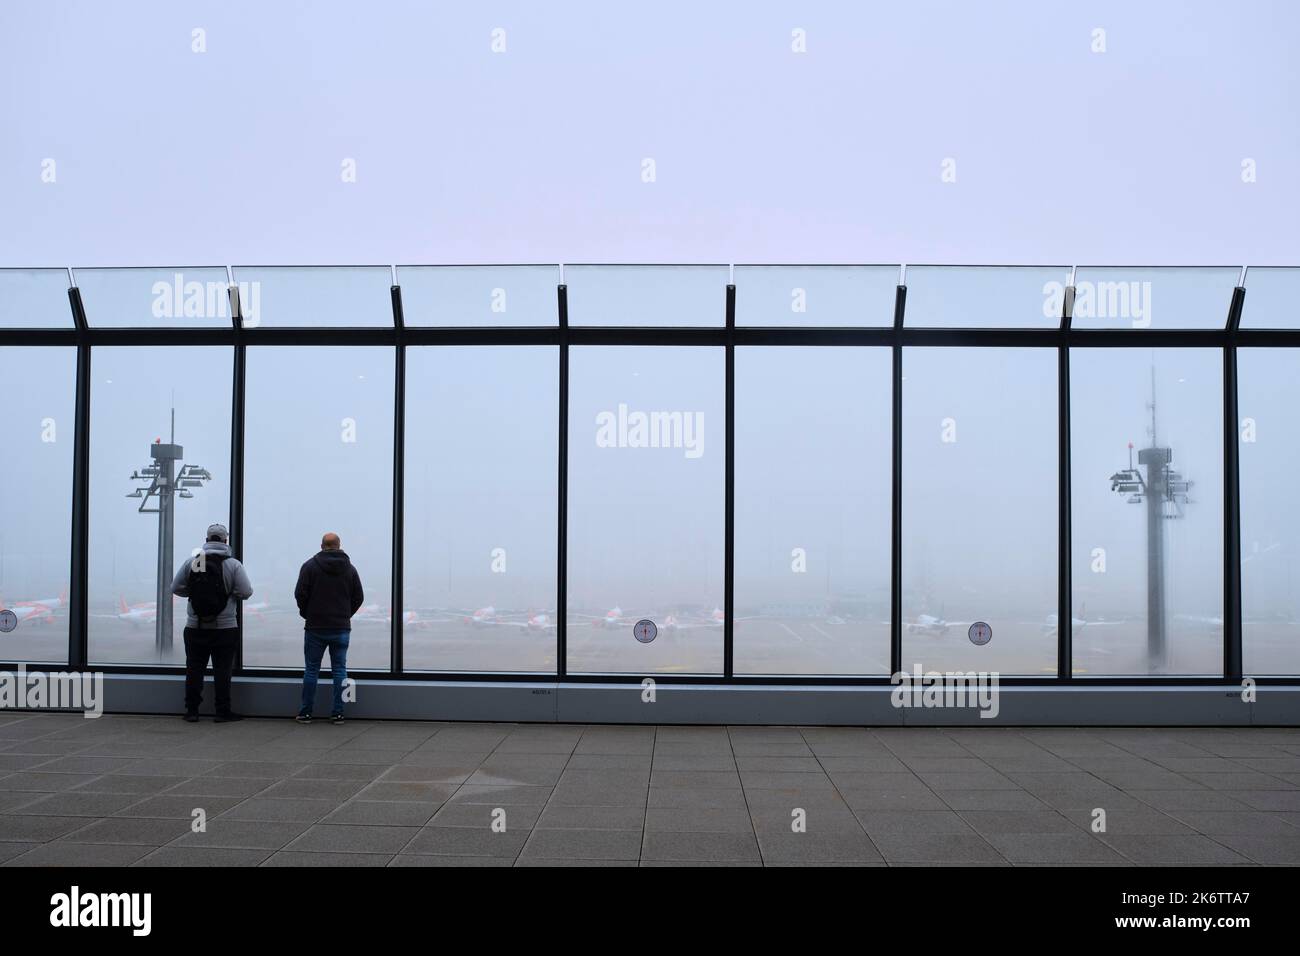 Germania, Berlino, 25. 11. 2020, BER, terrazza per visitatori, Terminal 1, persone, velivolo, nebbia Foto Stock